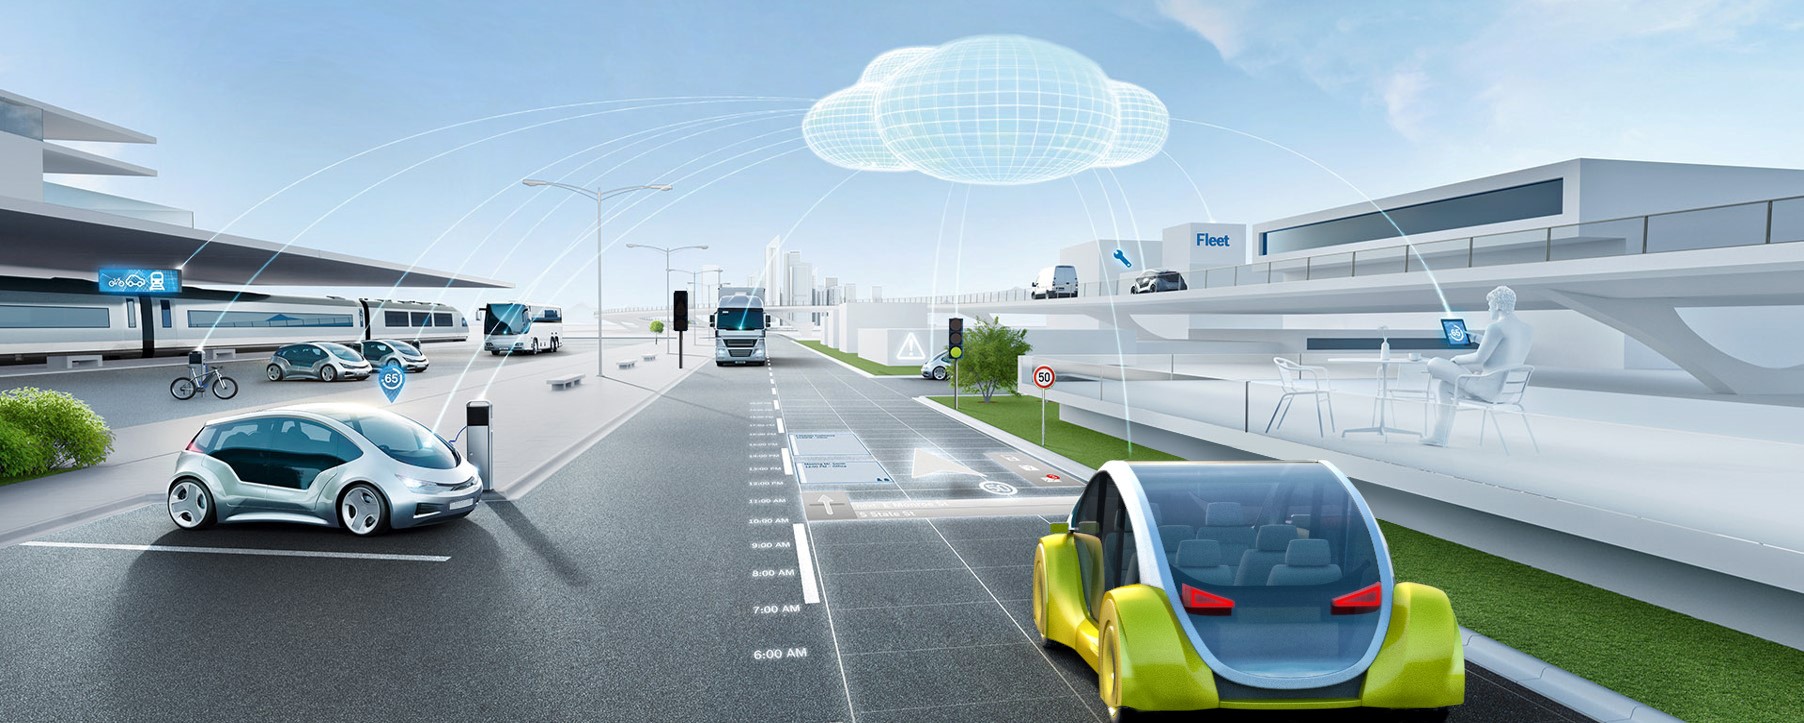 智能交通服务市场不断增长,博世成立全新智能网联事业部